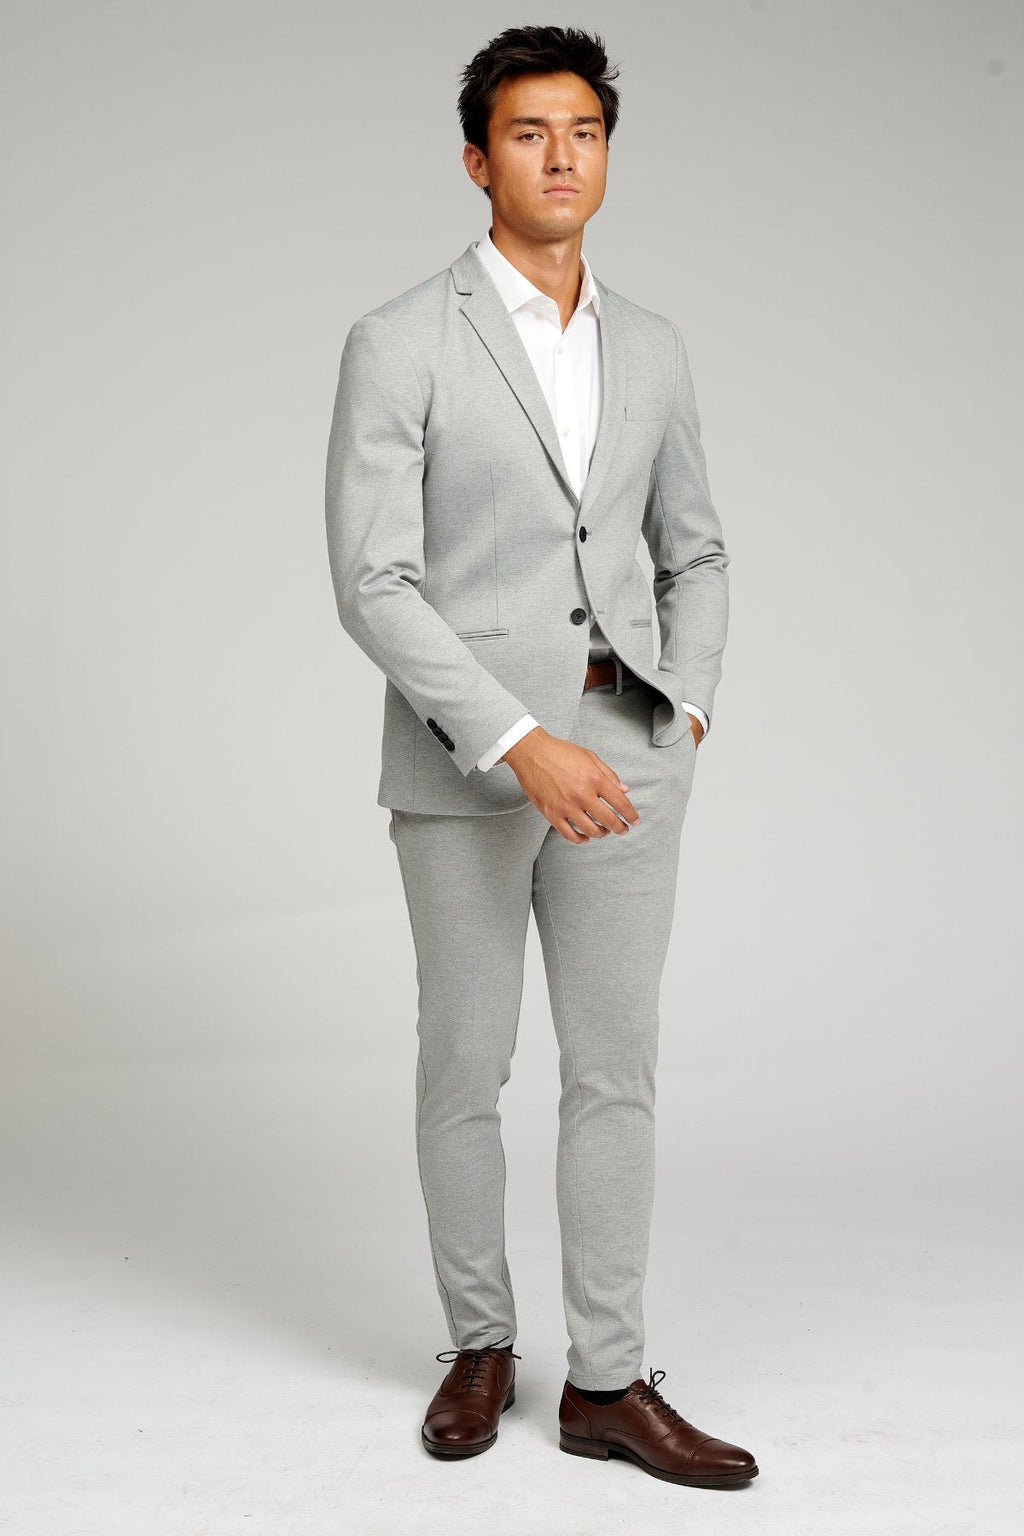 高性能套装™️ (浅灰色) + 高性能衬衫™️ - 套餐优惠 (V.I.P)